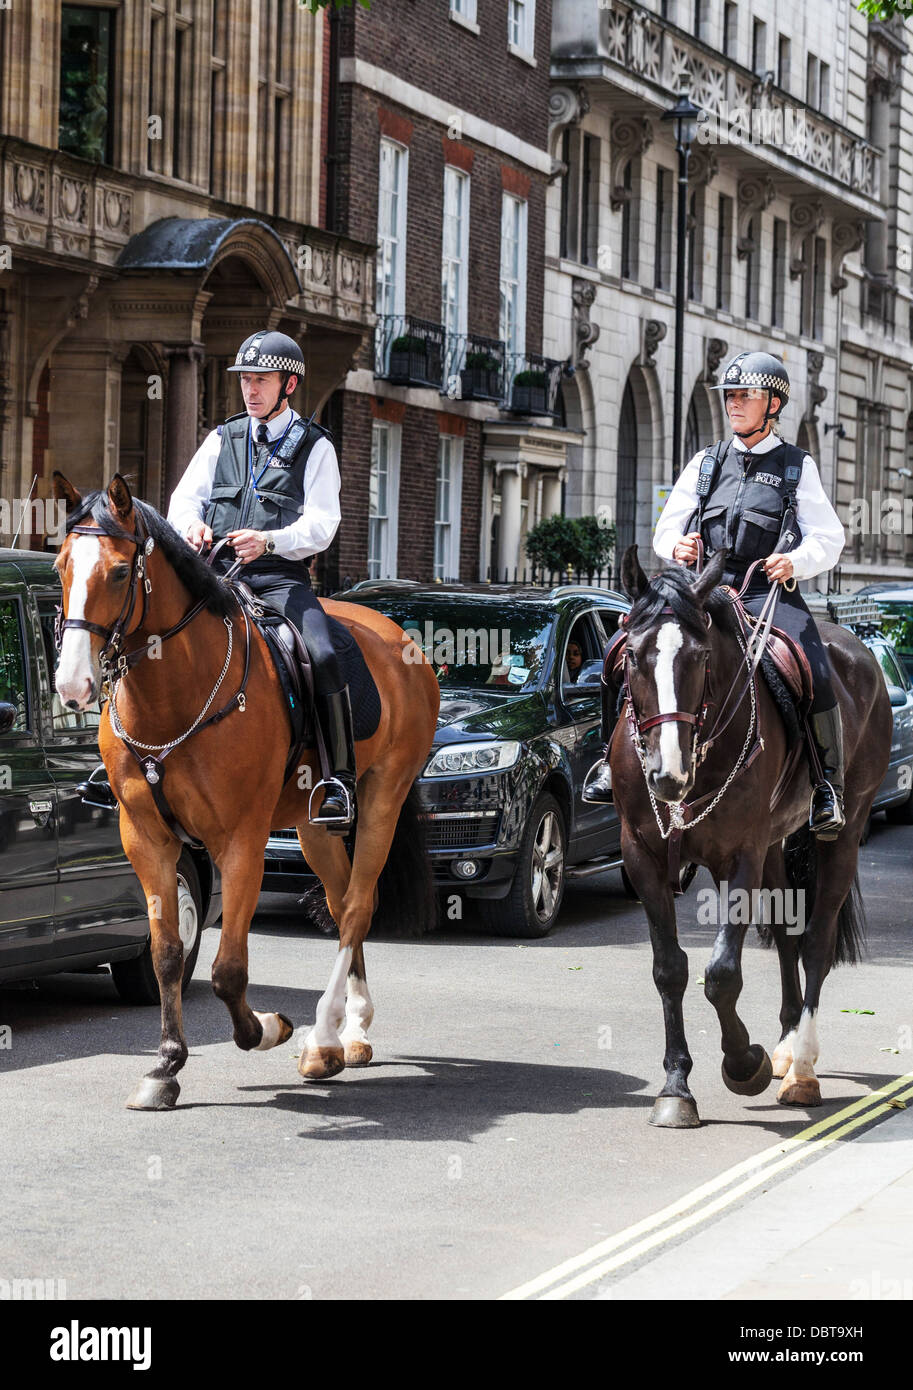 Dos funcionarios de la policía metropolitana británica montado en patrulla, Great George Street, Londres, Inglaterra, Reino Unido. Foto de stock